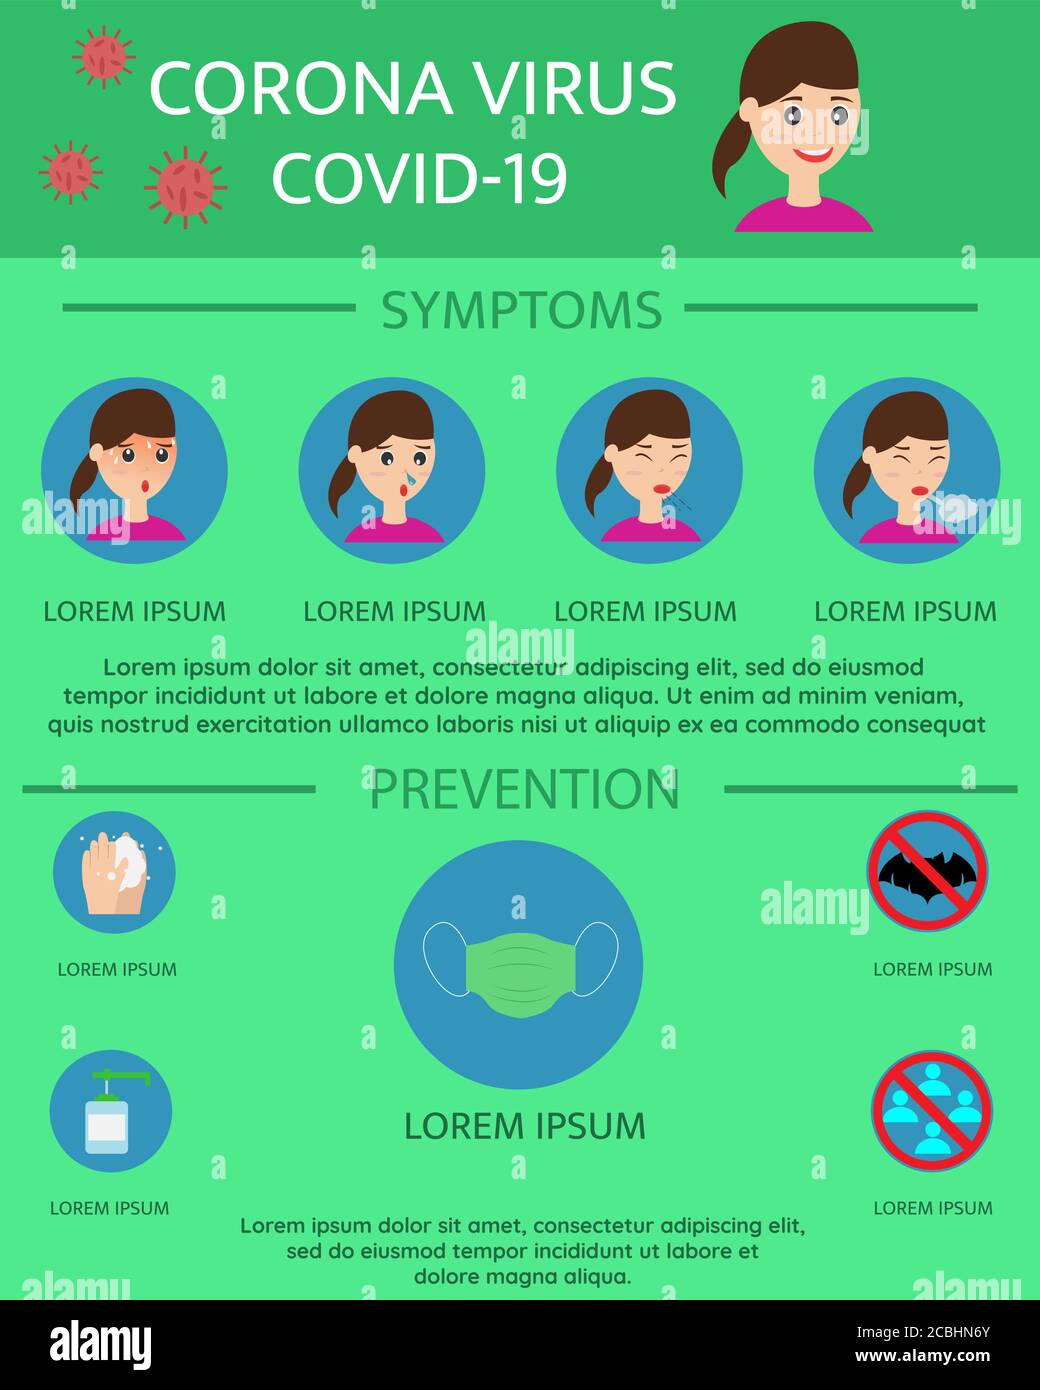 Disegno vettoriale di illustrazione dei sintomi del coronavirus covid-19 e infografiche di prevenzione Illustrazione Vettoriale